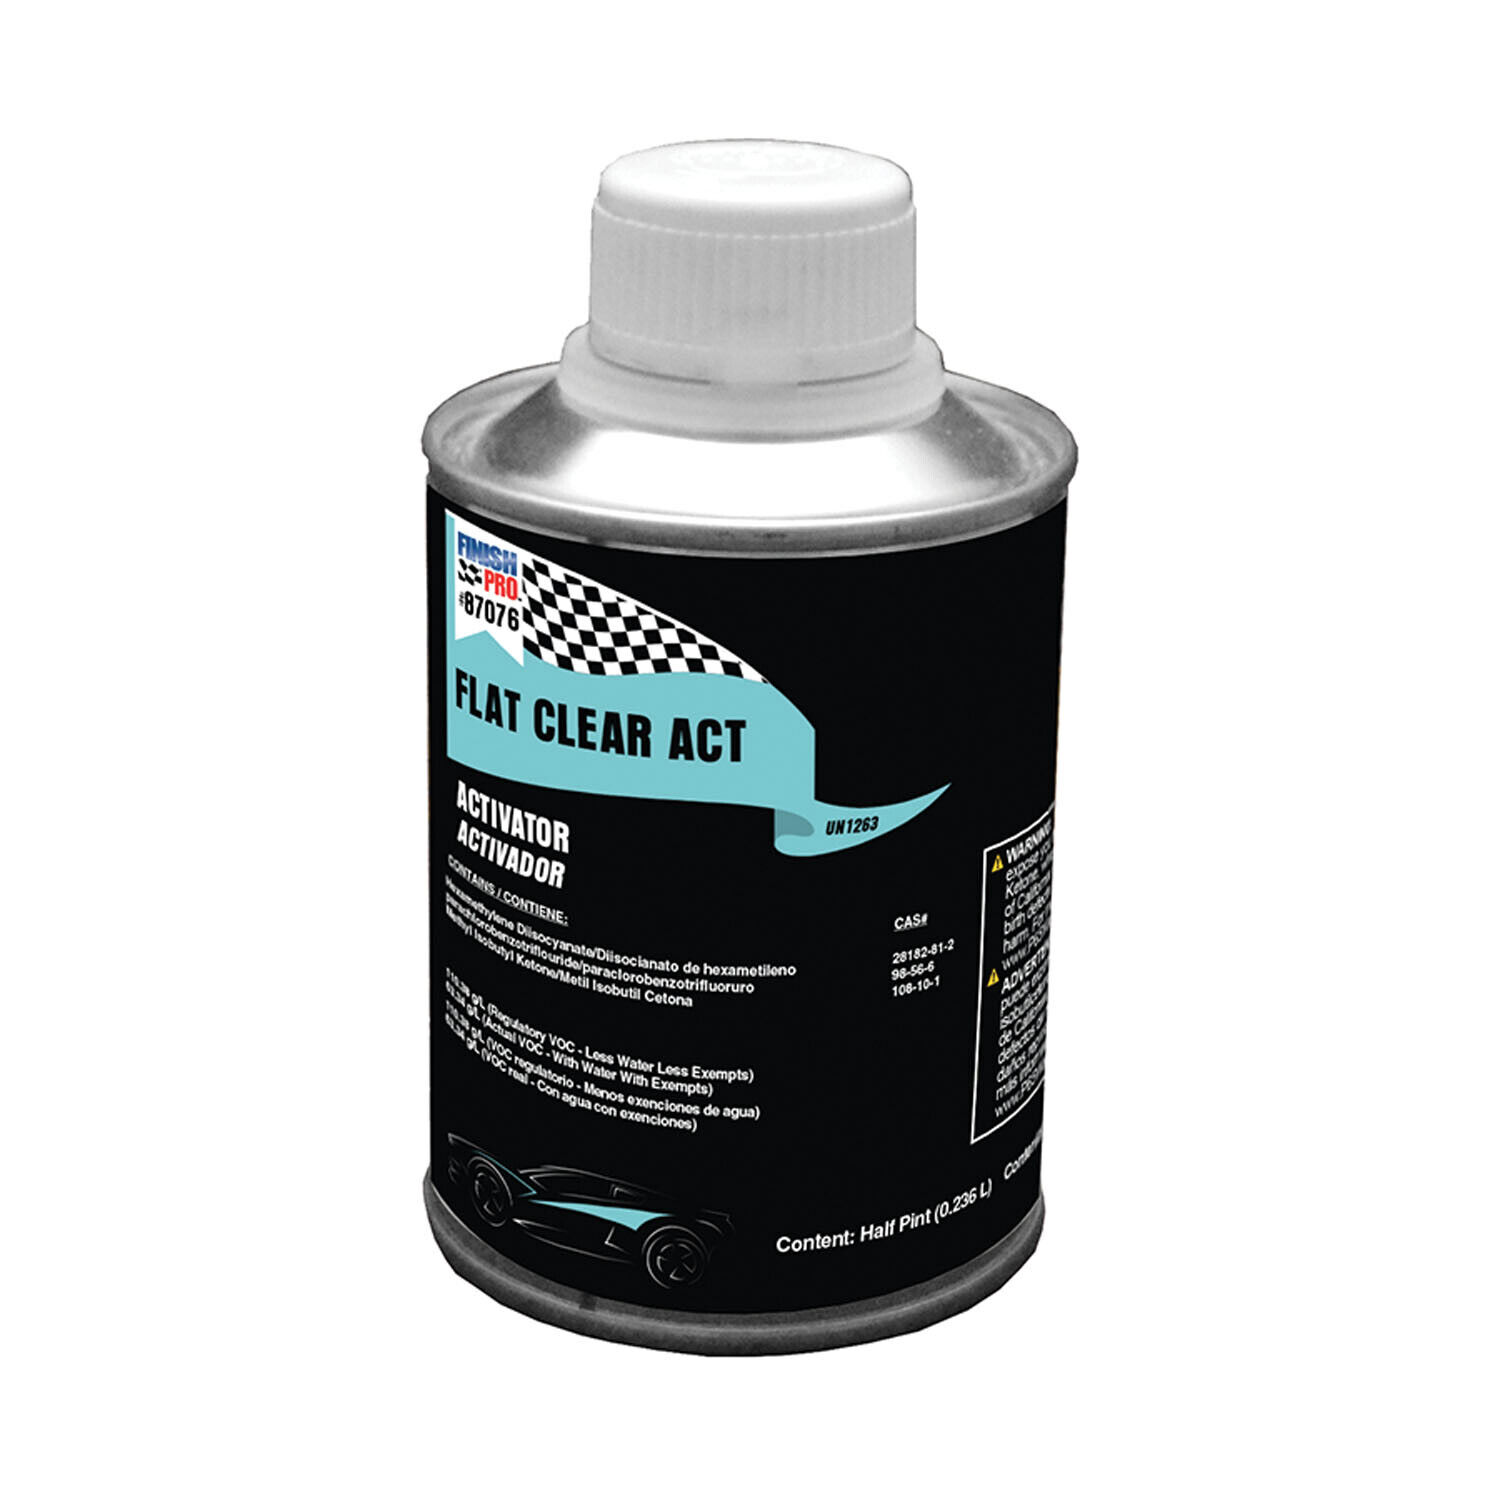 Flat Clear Activator, Acrylic Urethane Hardener 1/2 Pt